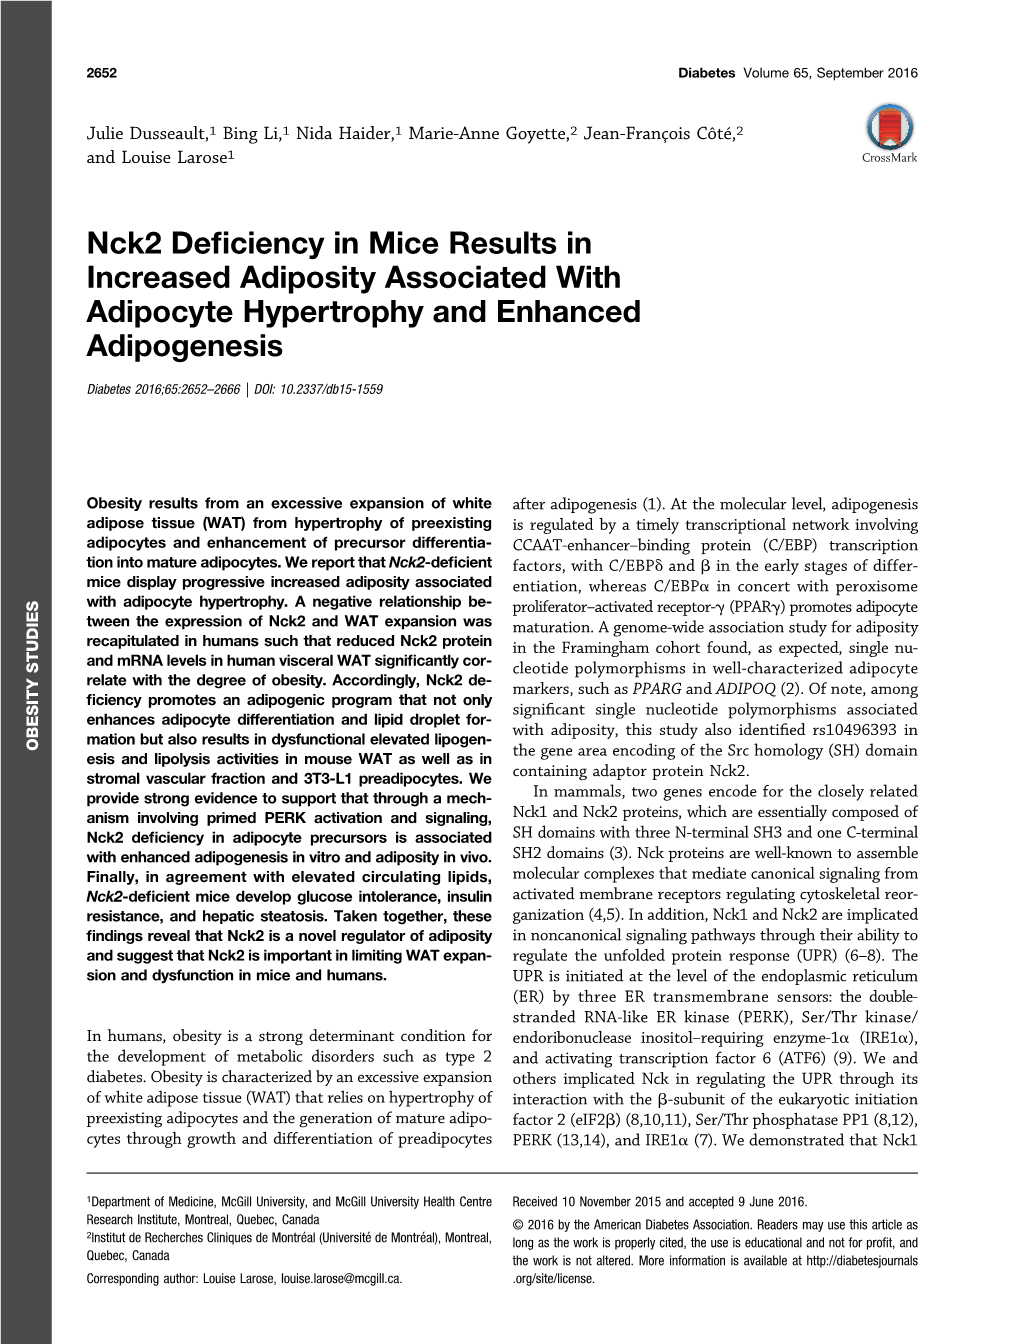 Nck2 Deficiency in Mice Results in Increased Adiposity